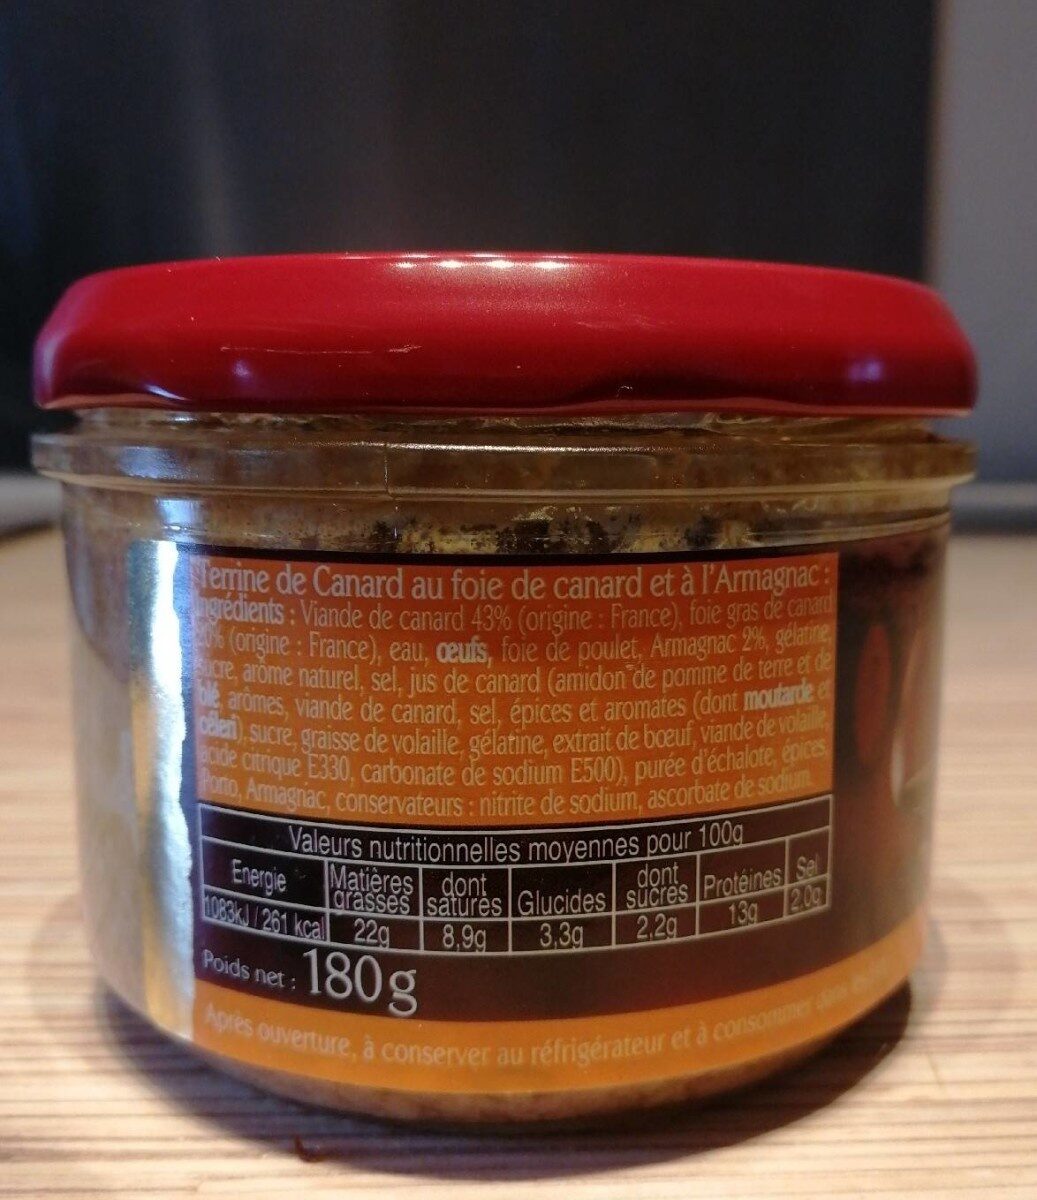 Terrine Canard Armagnac Delpeyrat 180 G, 1 Bocal - Tableau nutritionnel